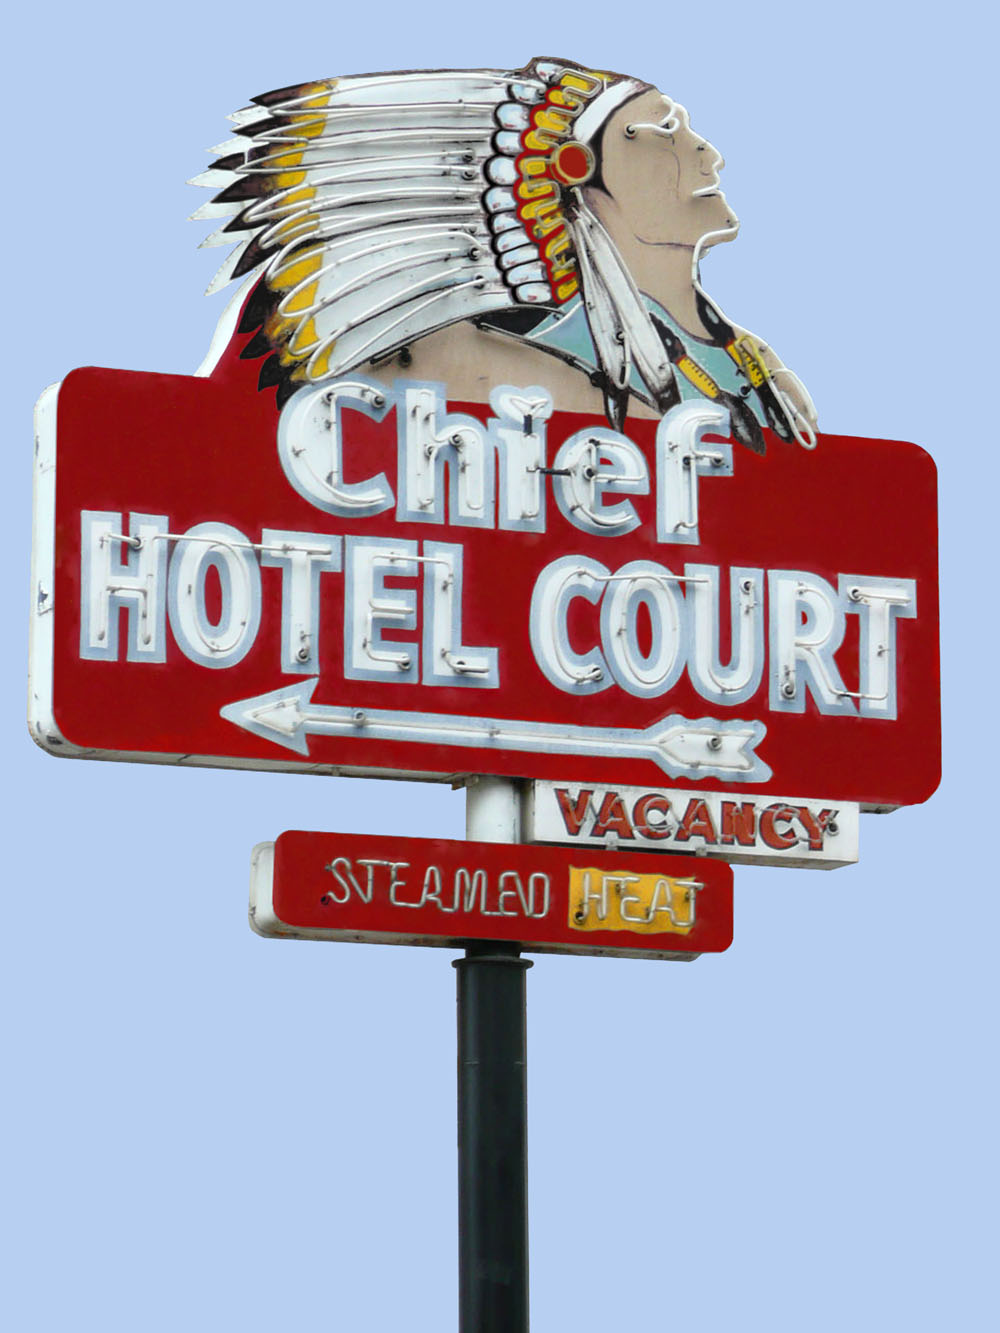 Chief Hotel Court